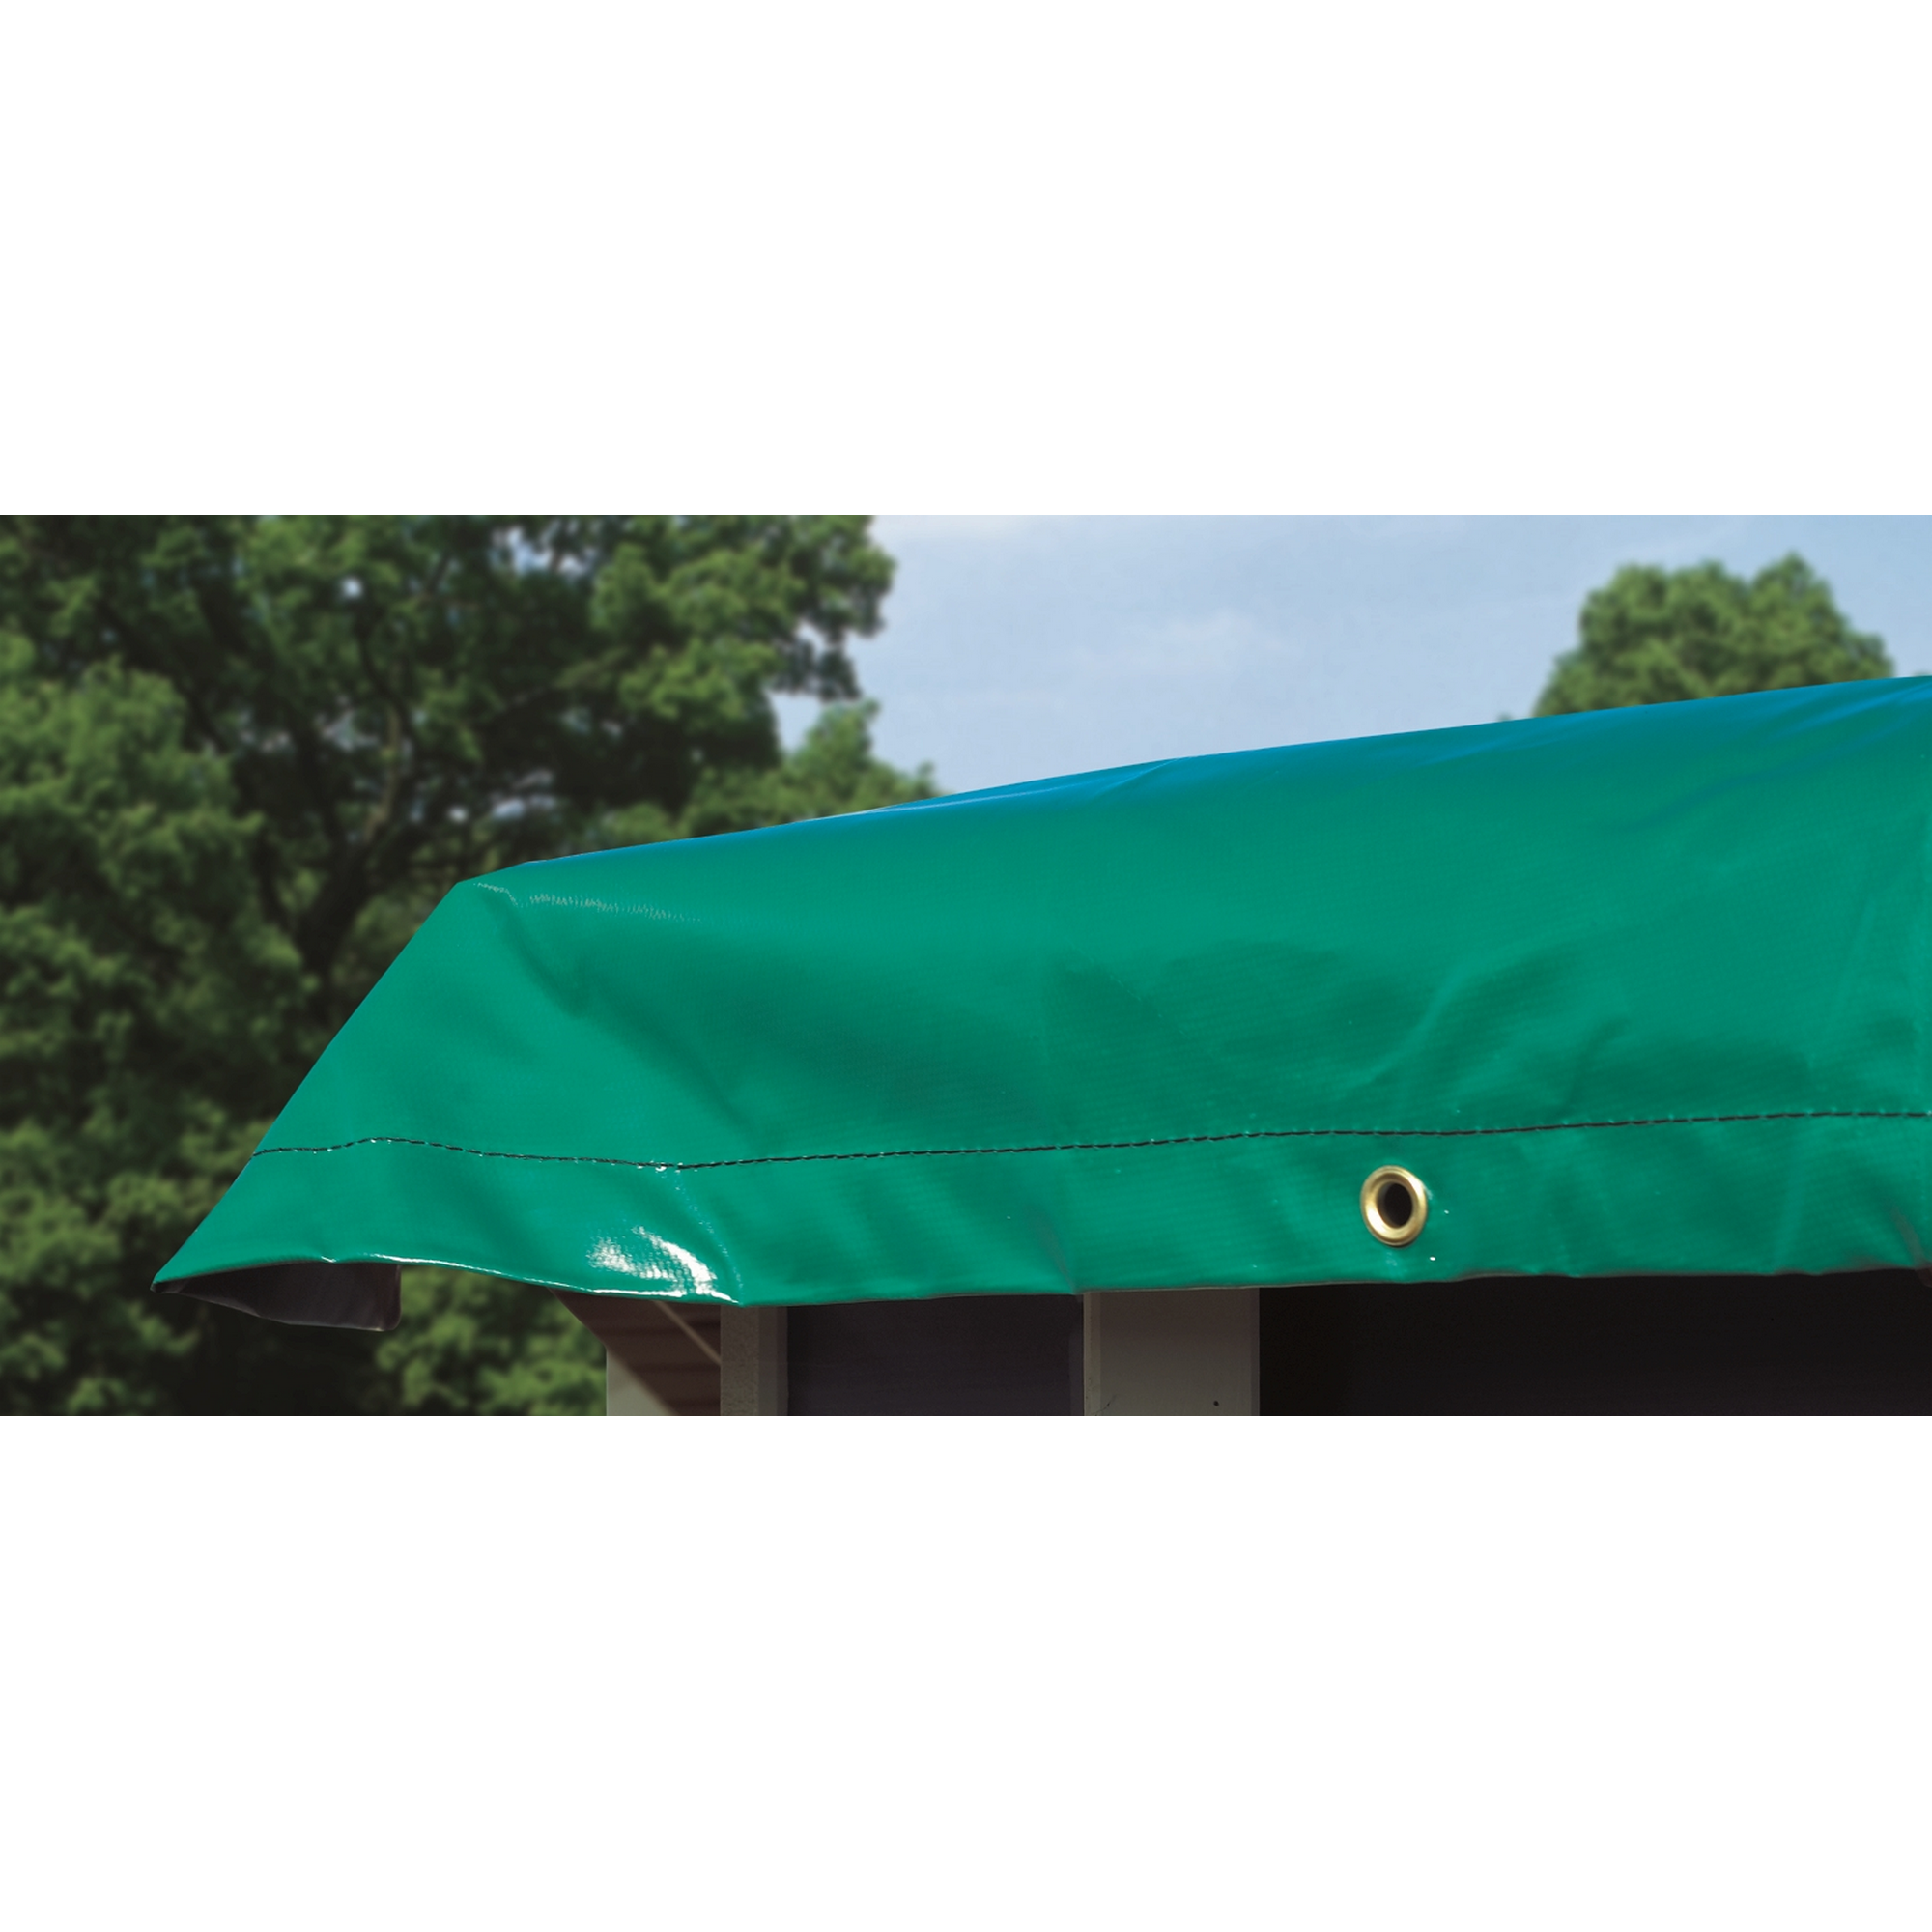 Winterabdeckplane grün 625 x 625 cm, für Massivholzpool Modell 3 + product picture